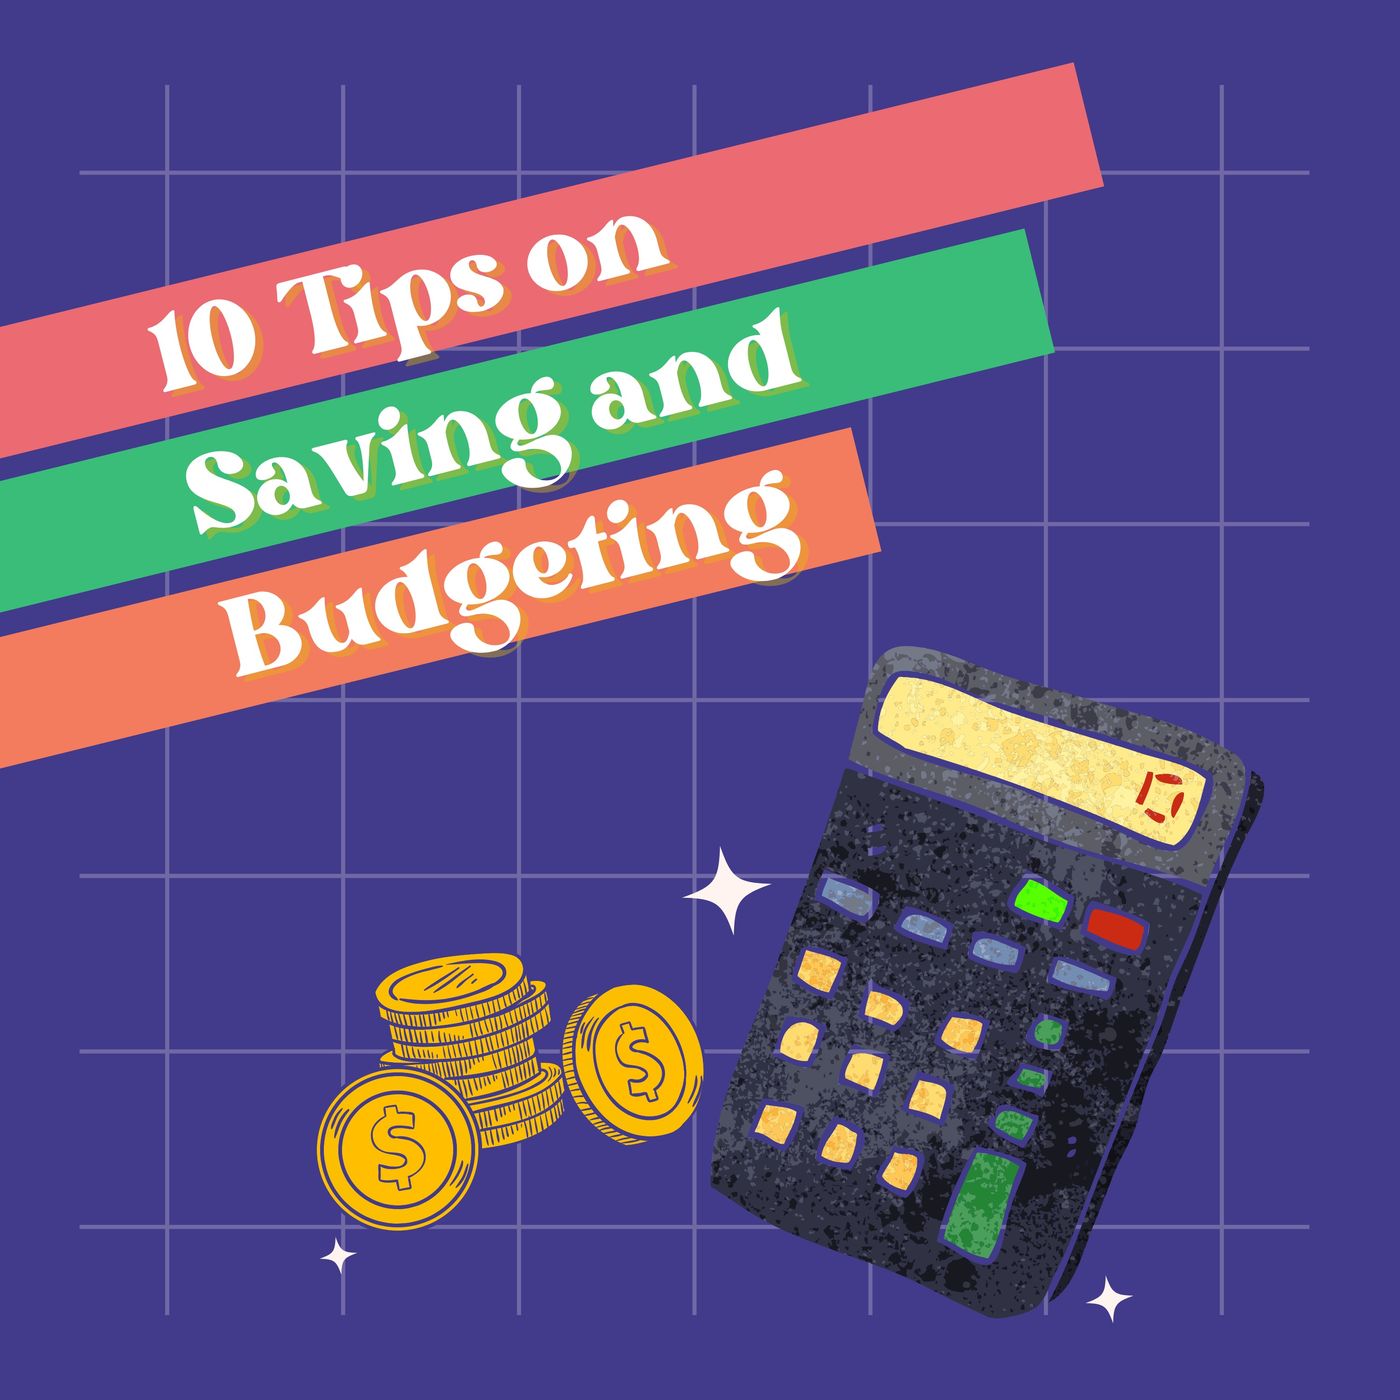 10 Tips on Saving and Budgeting.